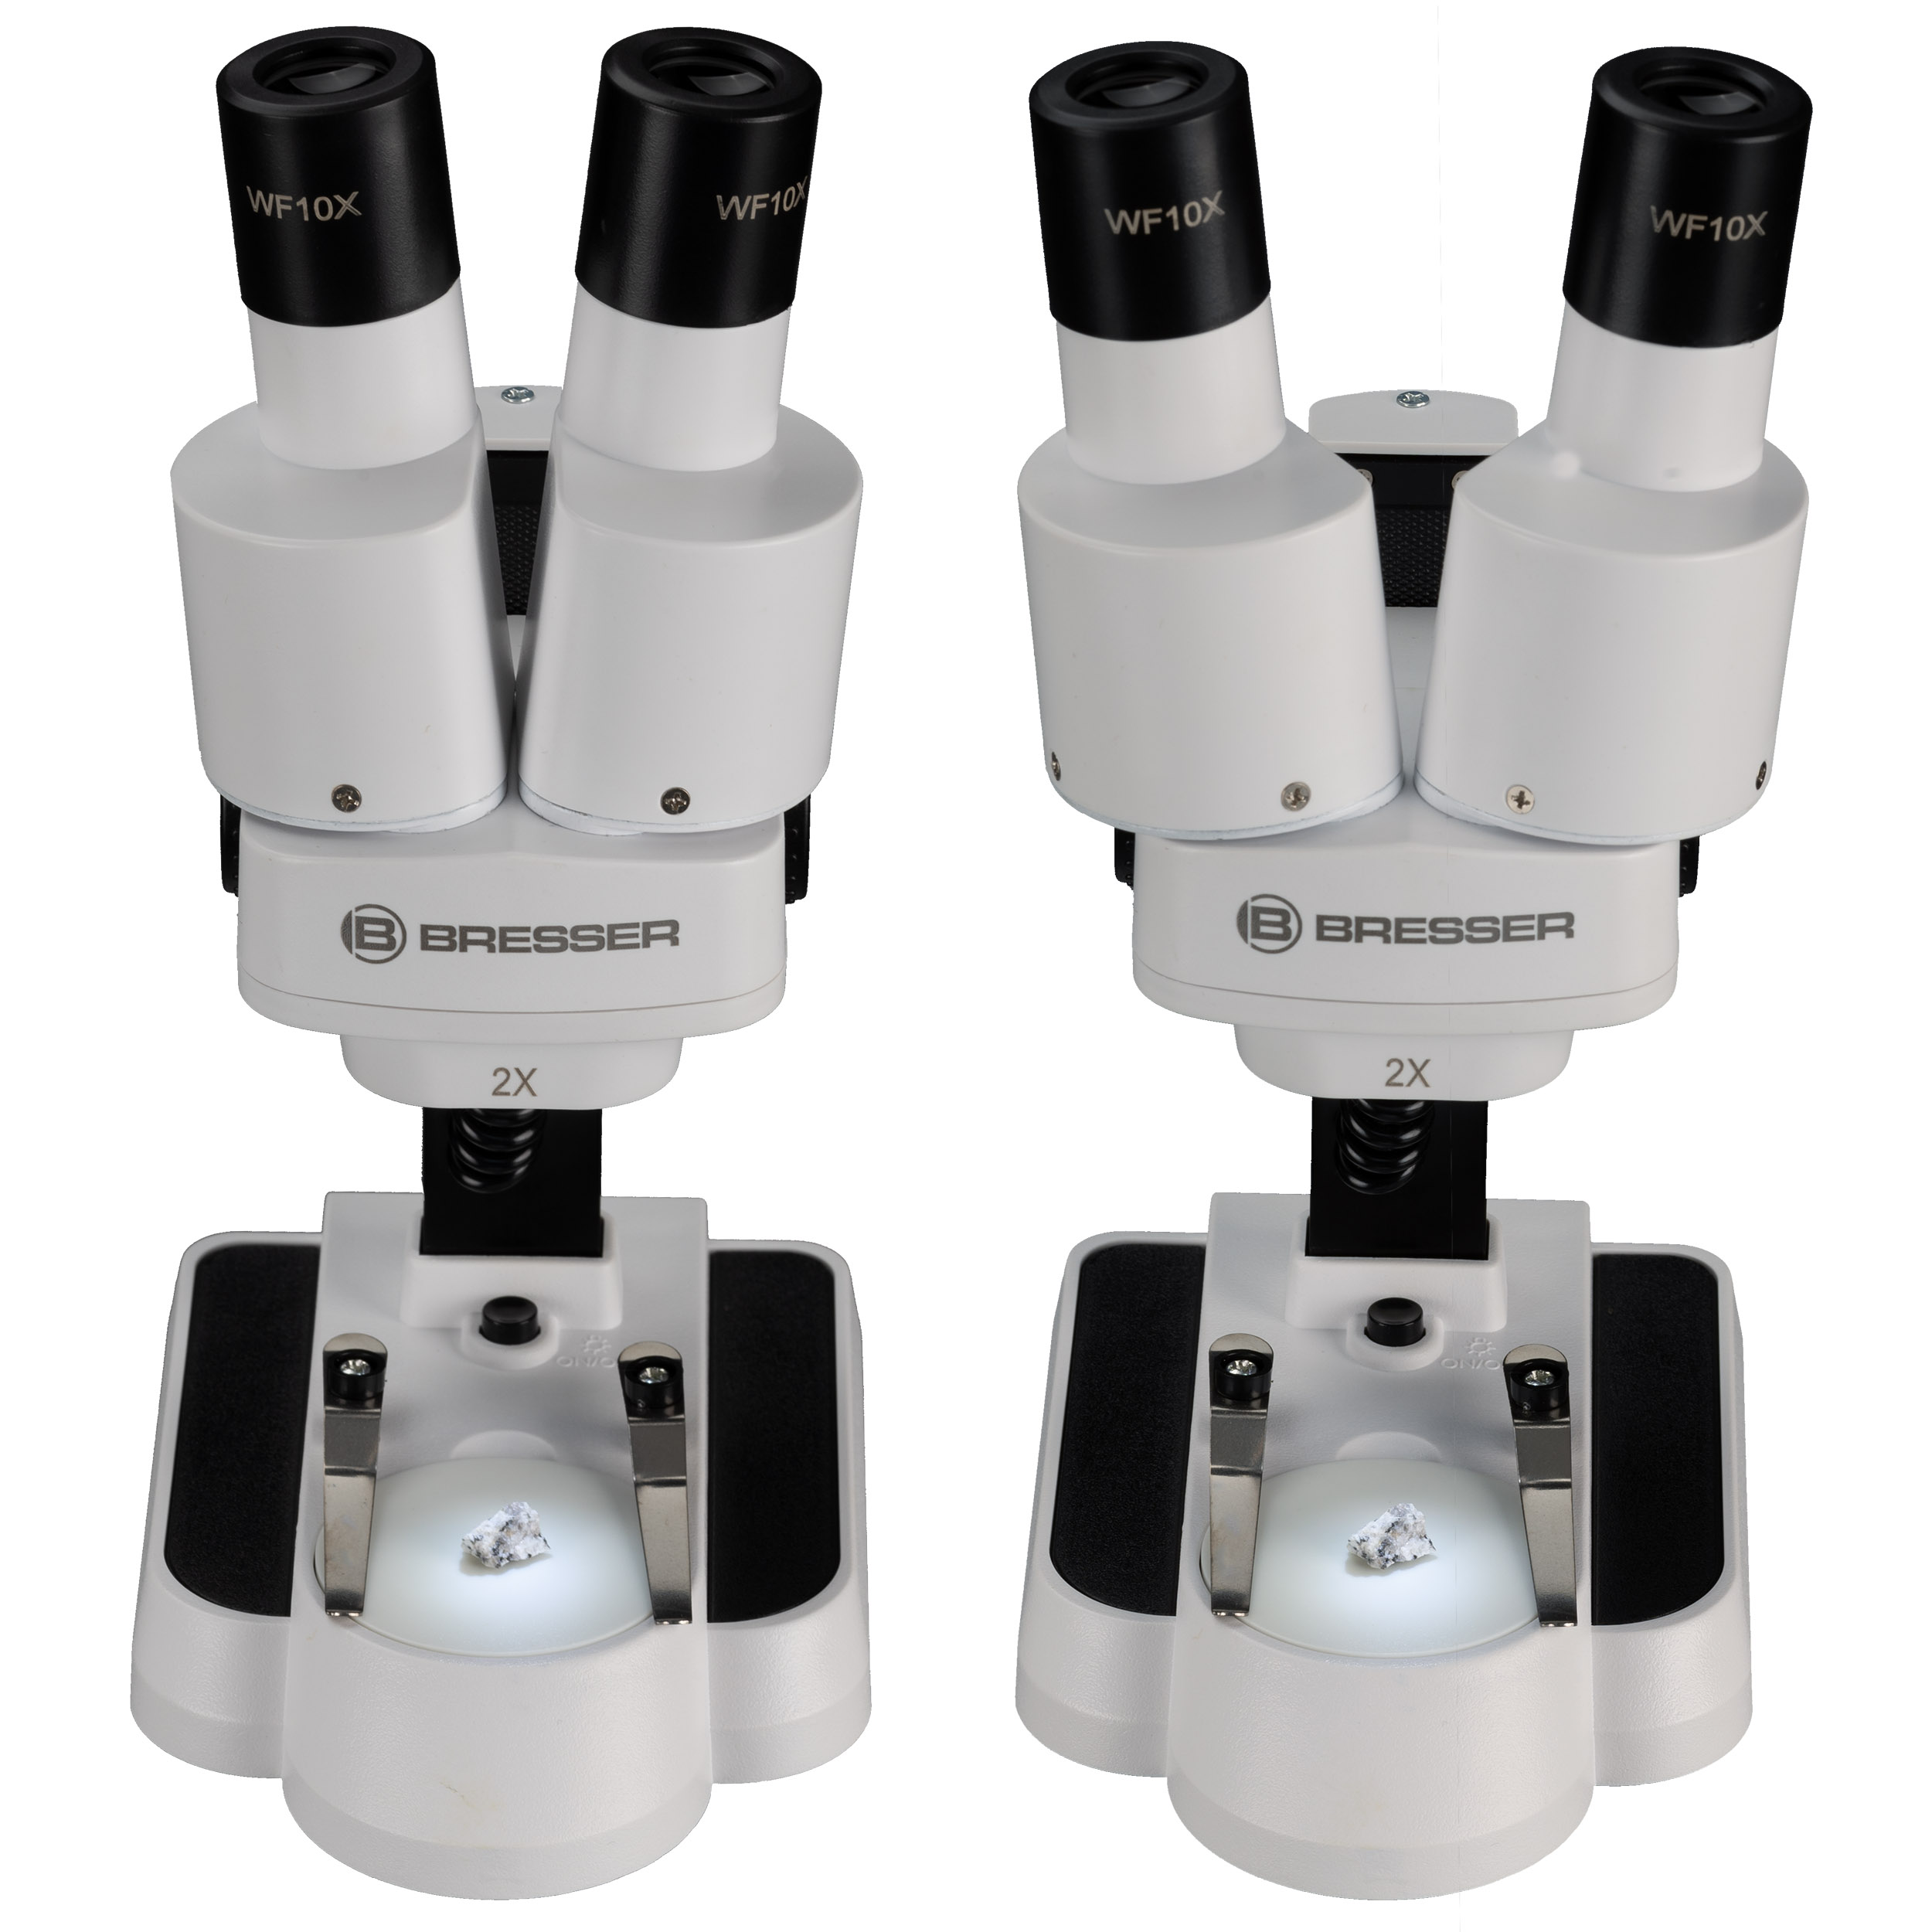 Microscopio a luce trasmessa e incidente BRESSER JUNIOR con ingrandimento 20x e 50x